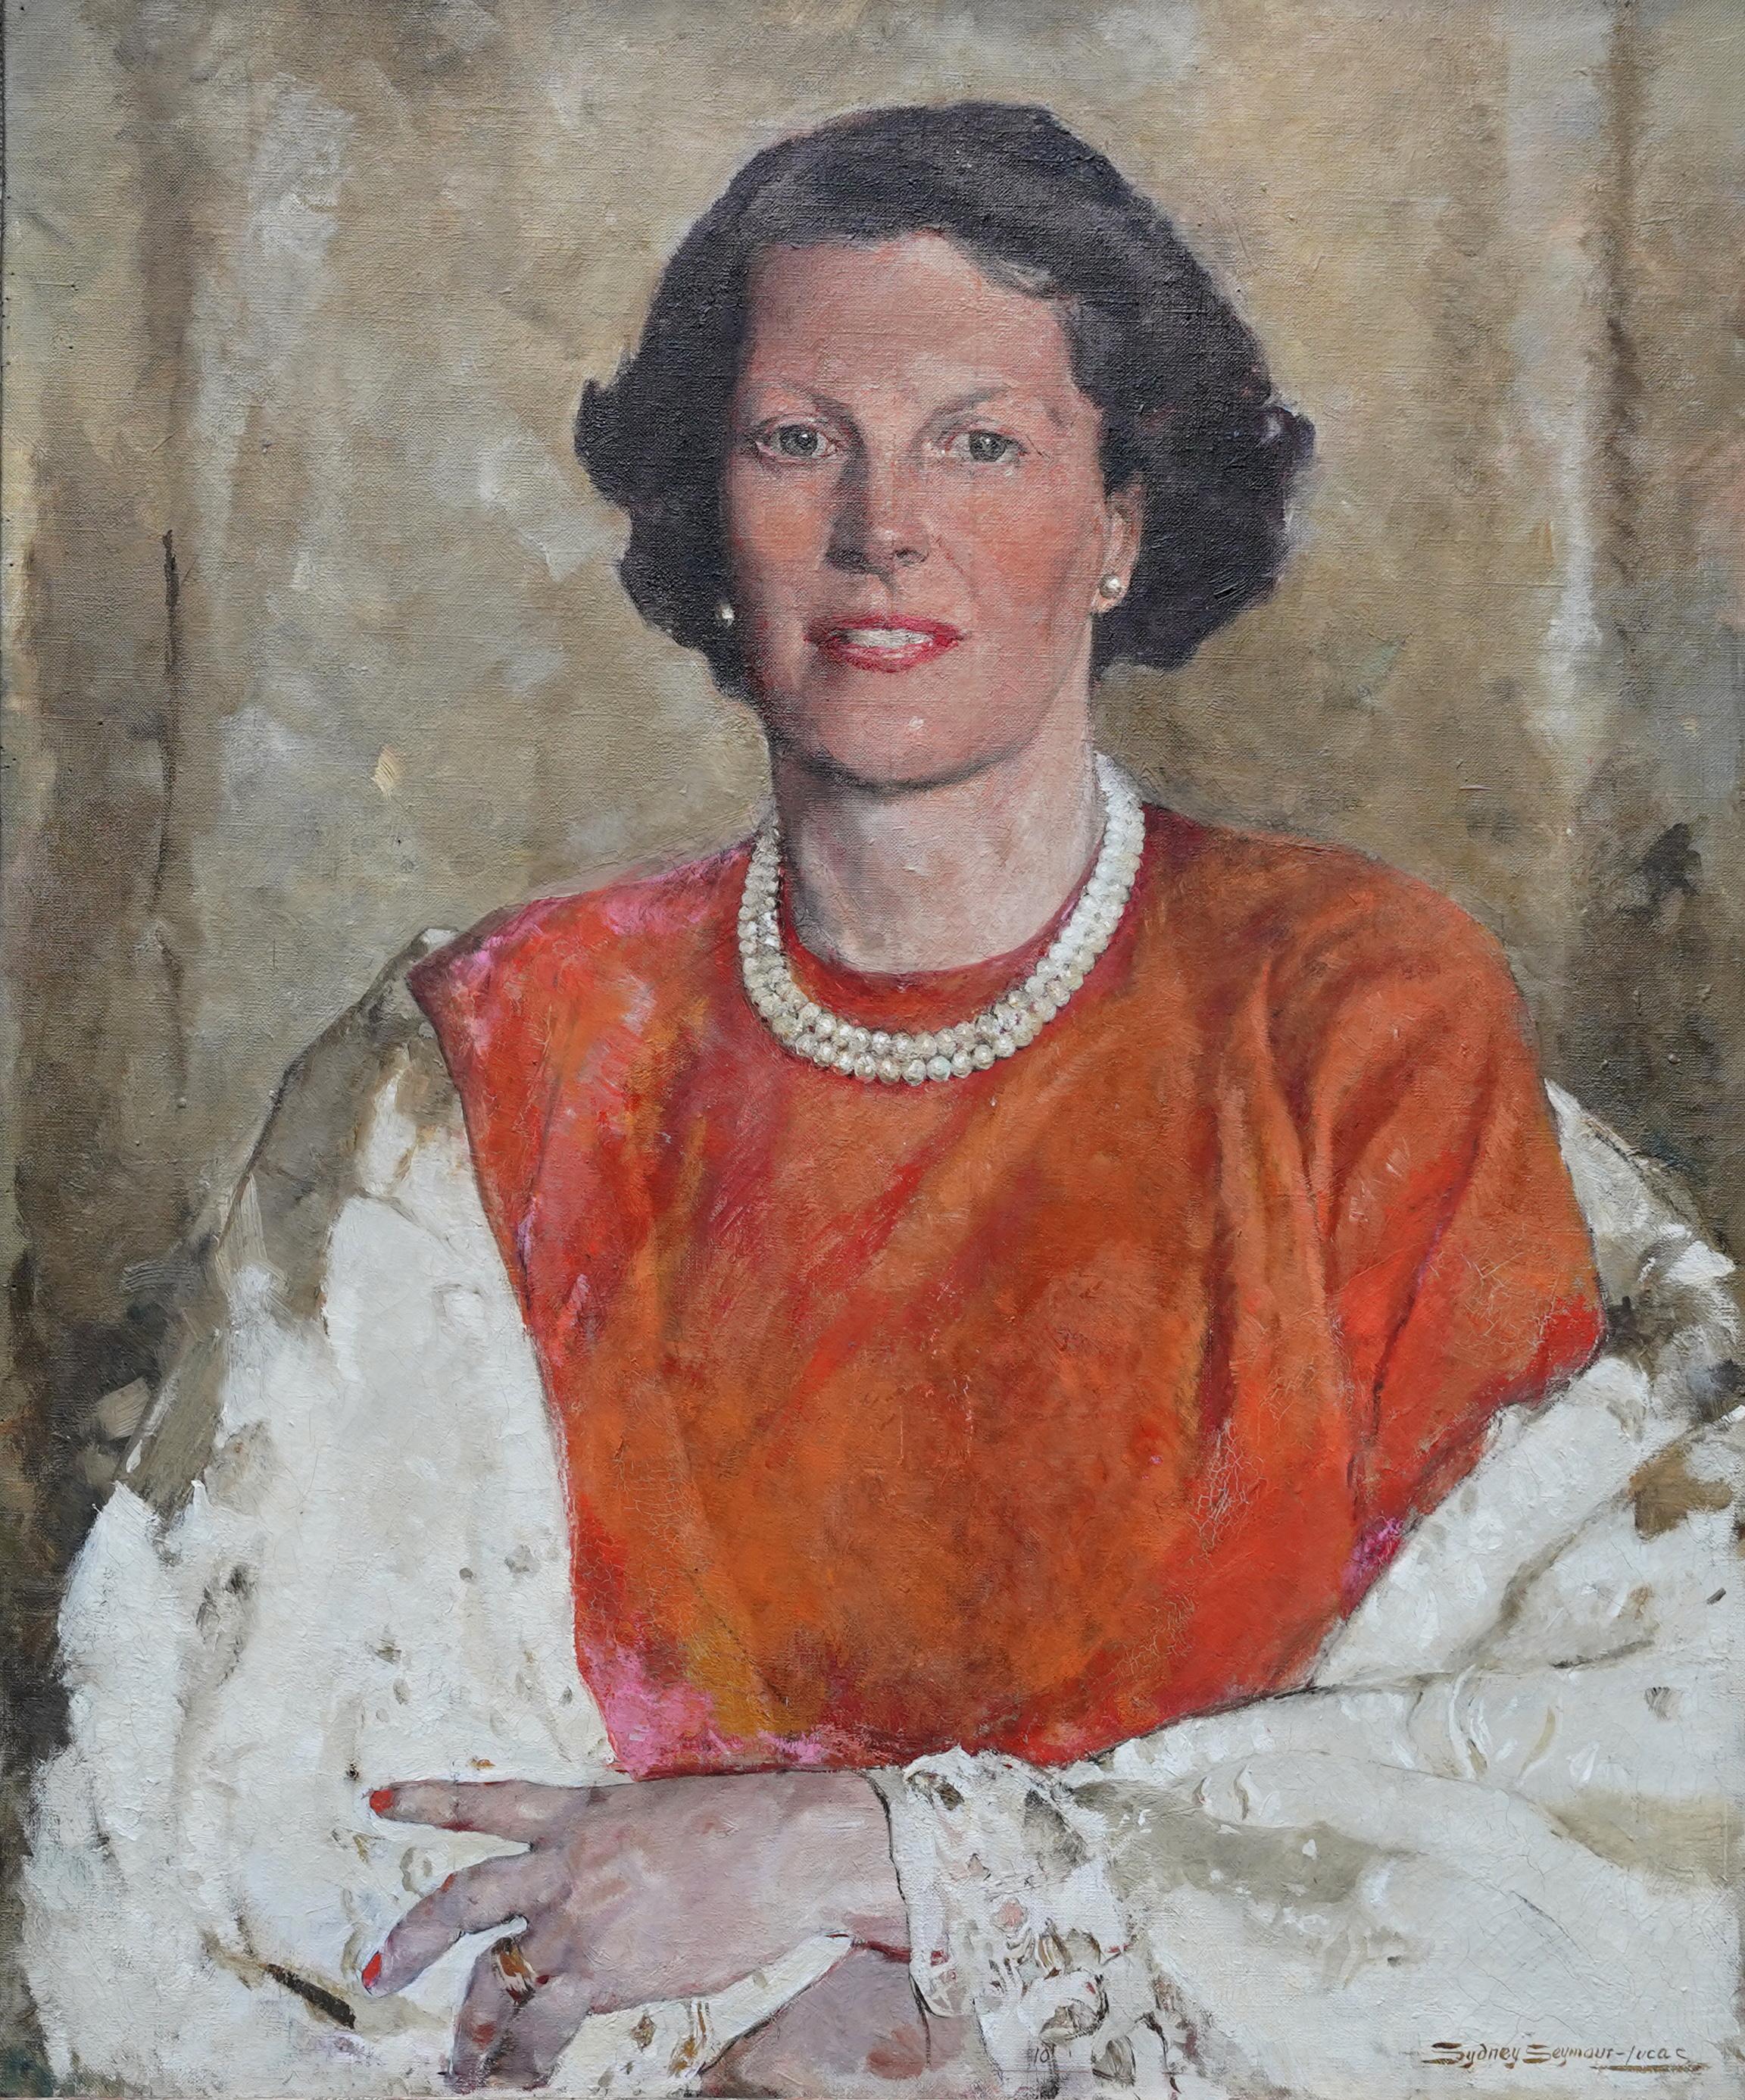 Portrait of Sheila De Quincey - British 1950's art portrait oil painting - Painting by Sydney Seymour Lucas